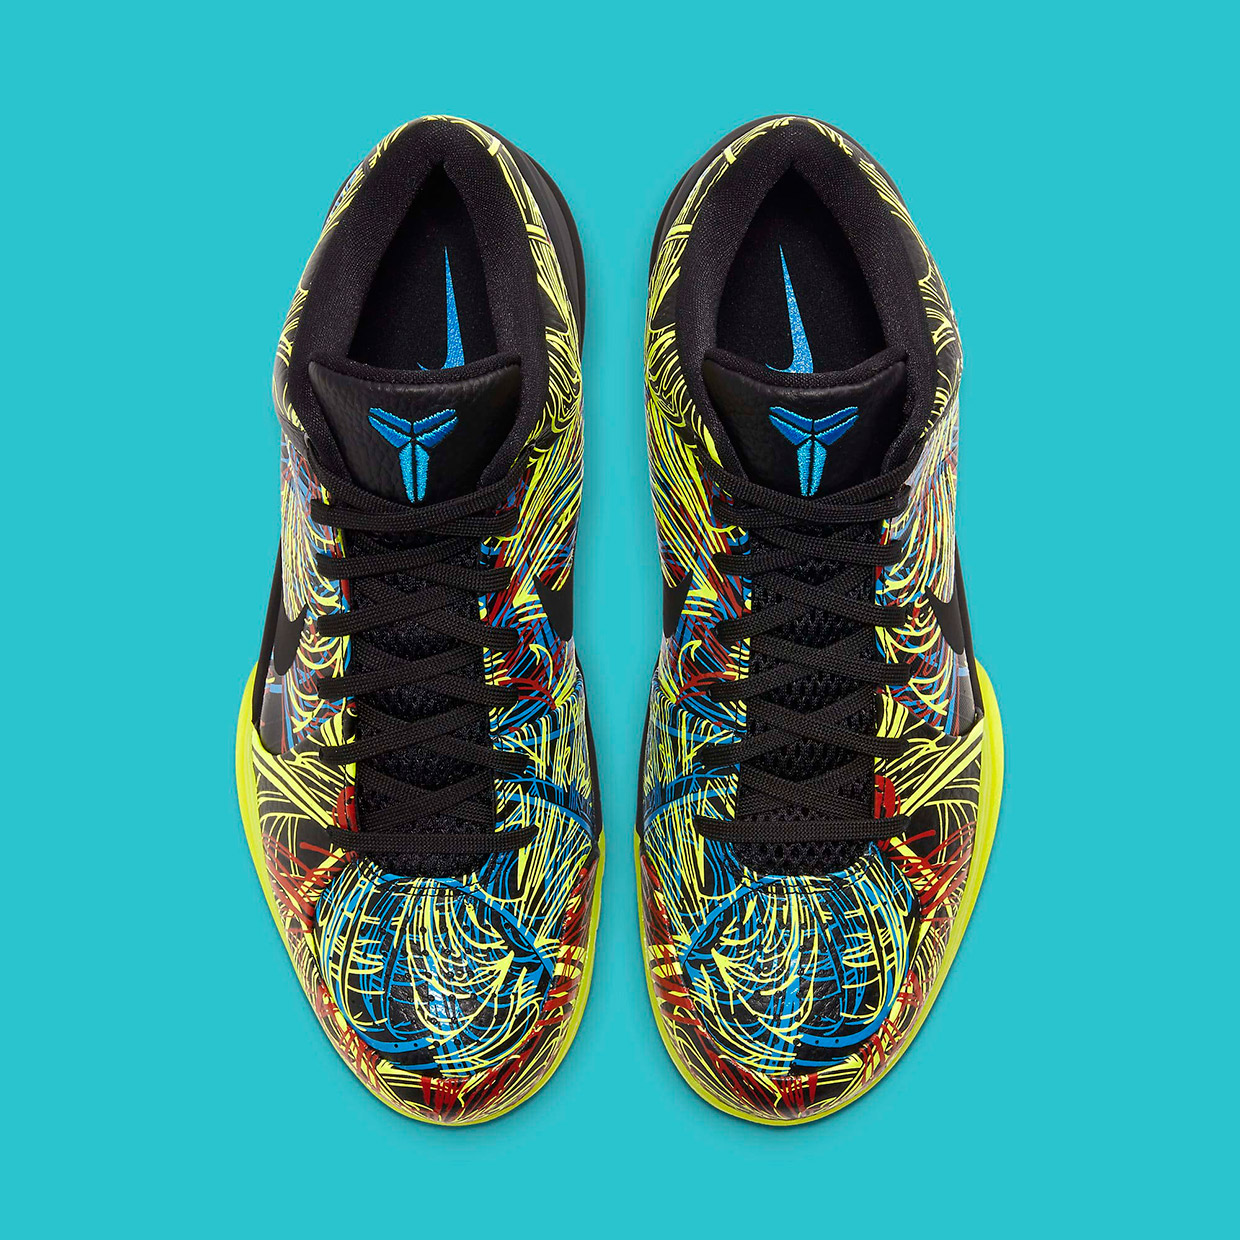 Nike Zoom Kobe IV Protro “Wizenard”